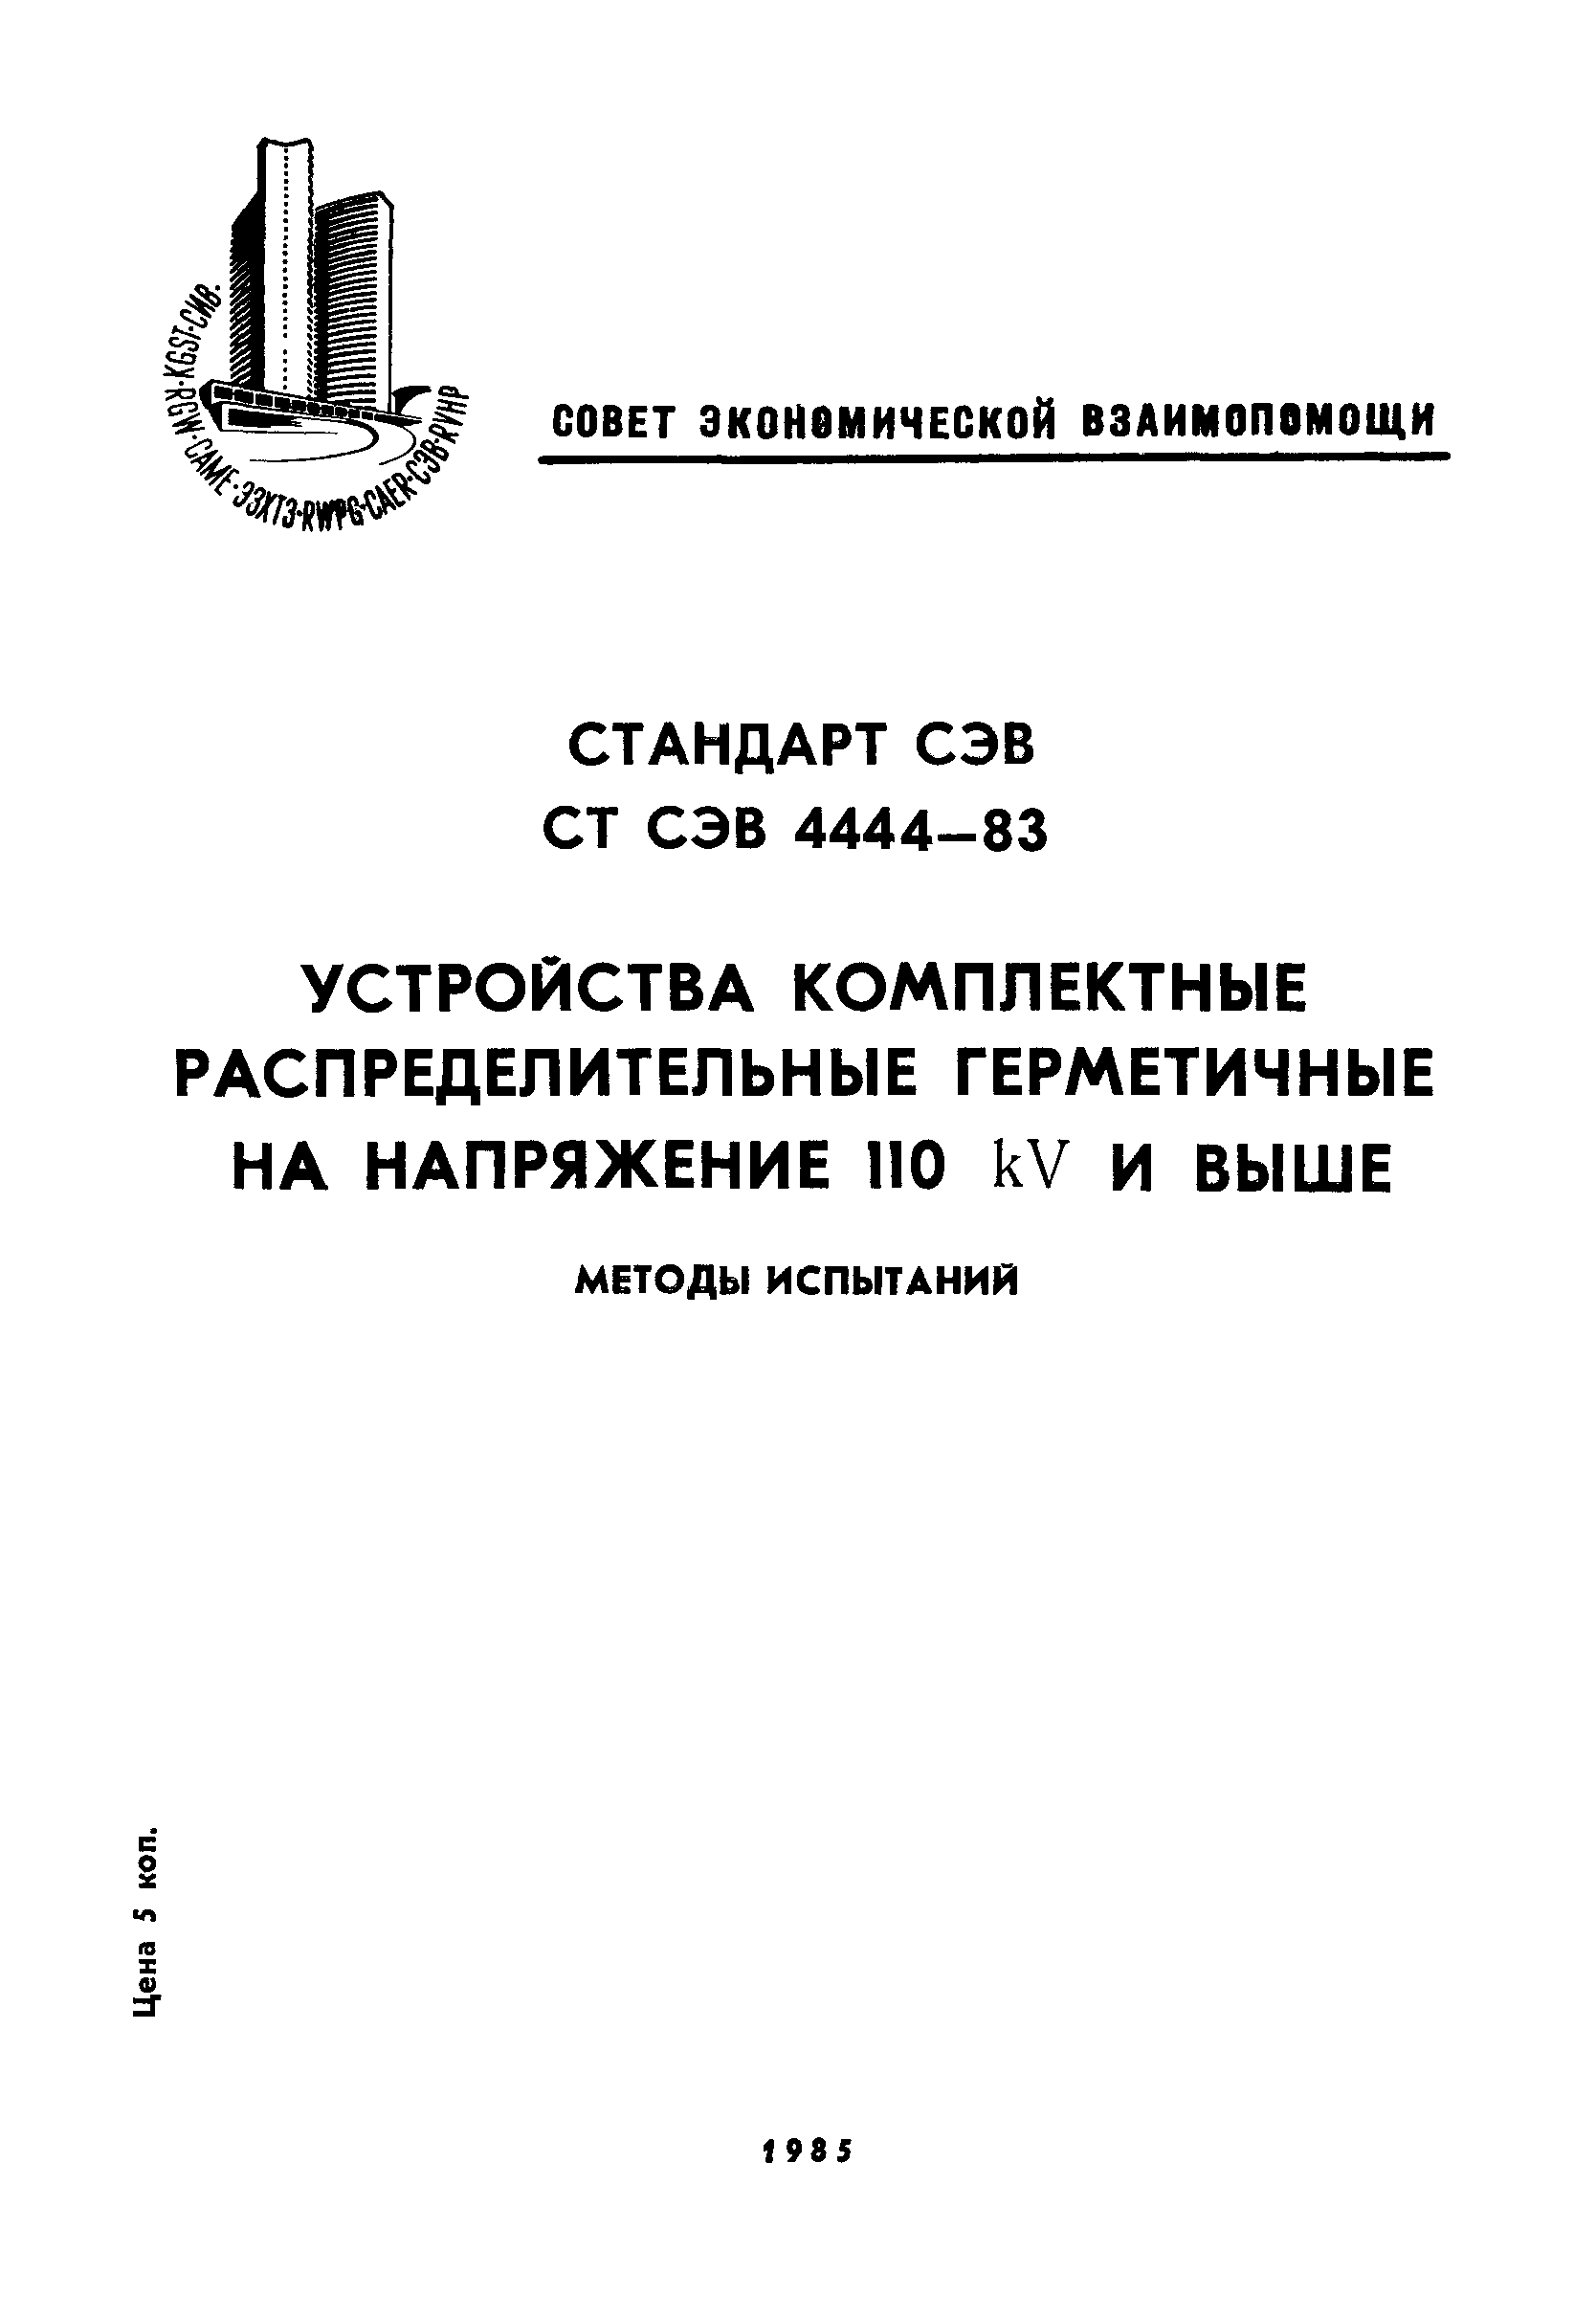 СТ СЭВ 4444-83